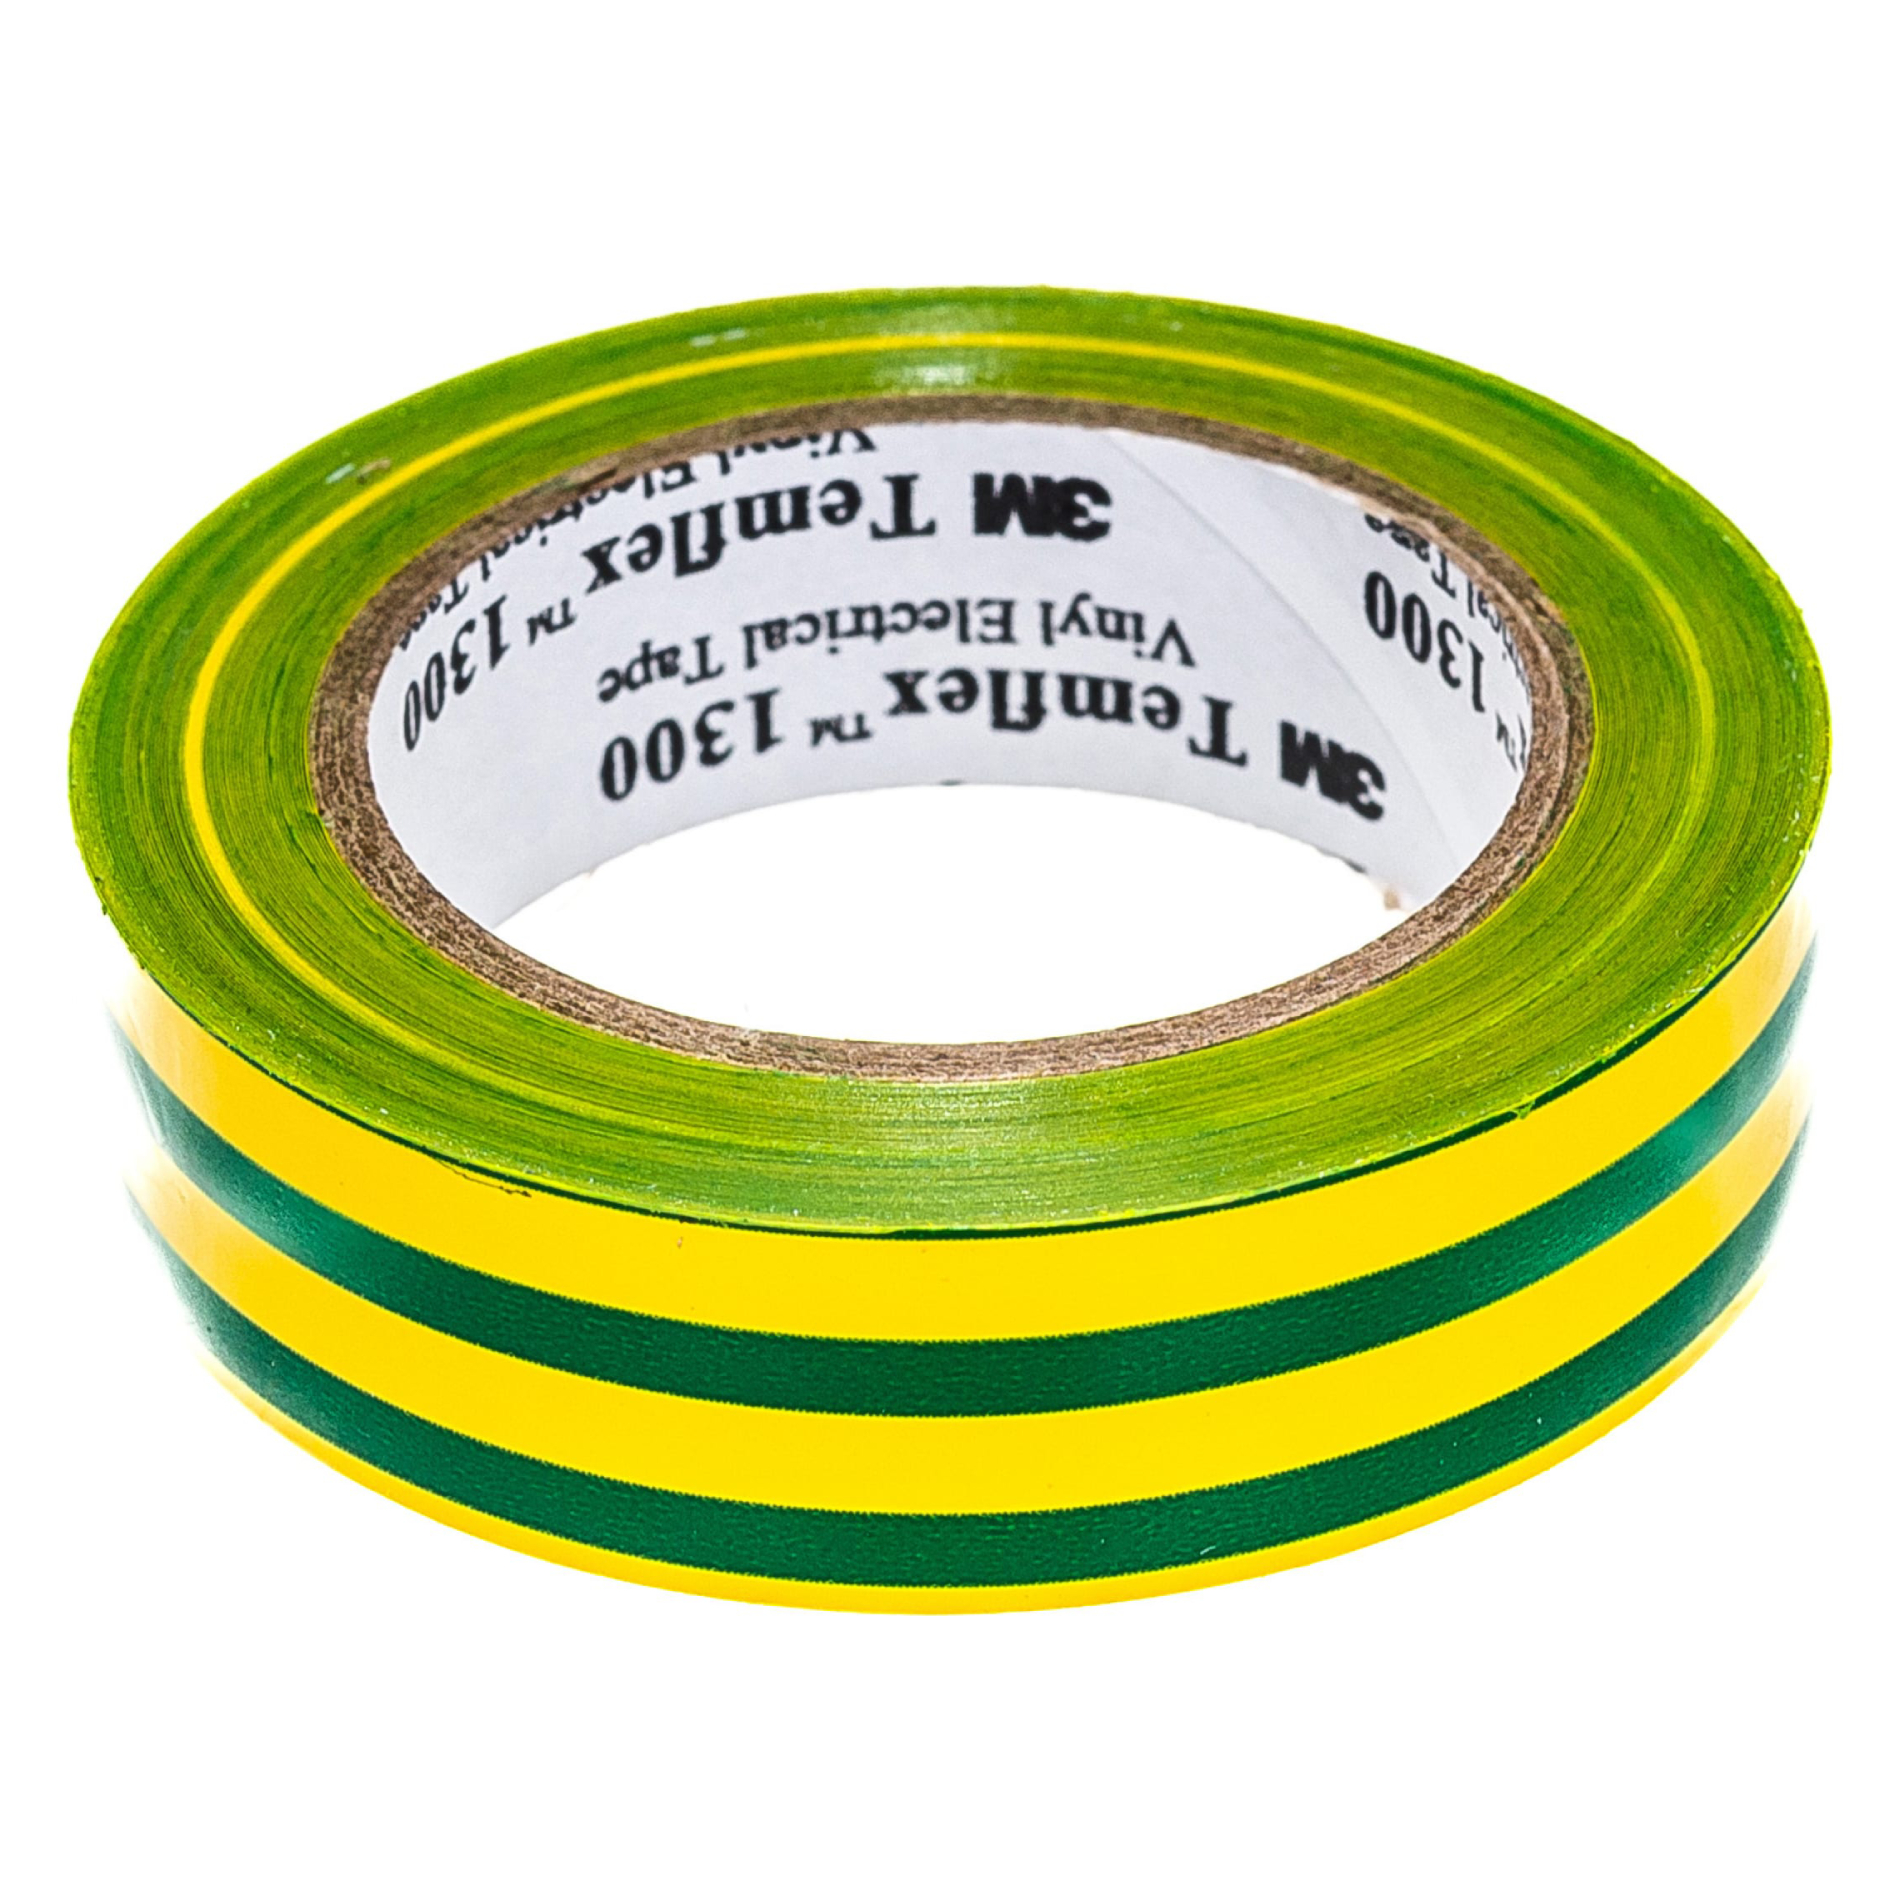 Изолента ПВХ 3М Temflex 1300 желто-зеленая рулон 15мм x 10м